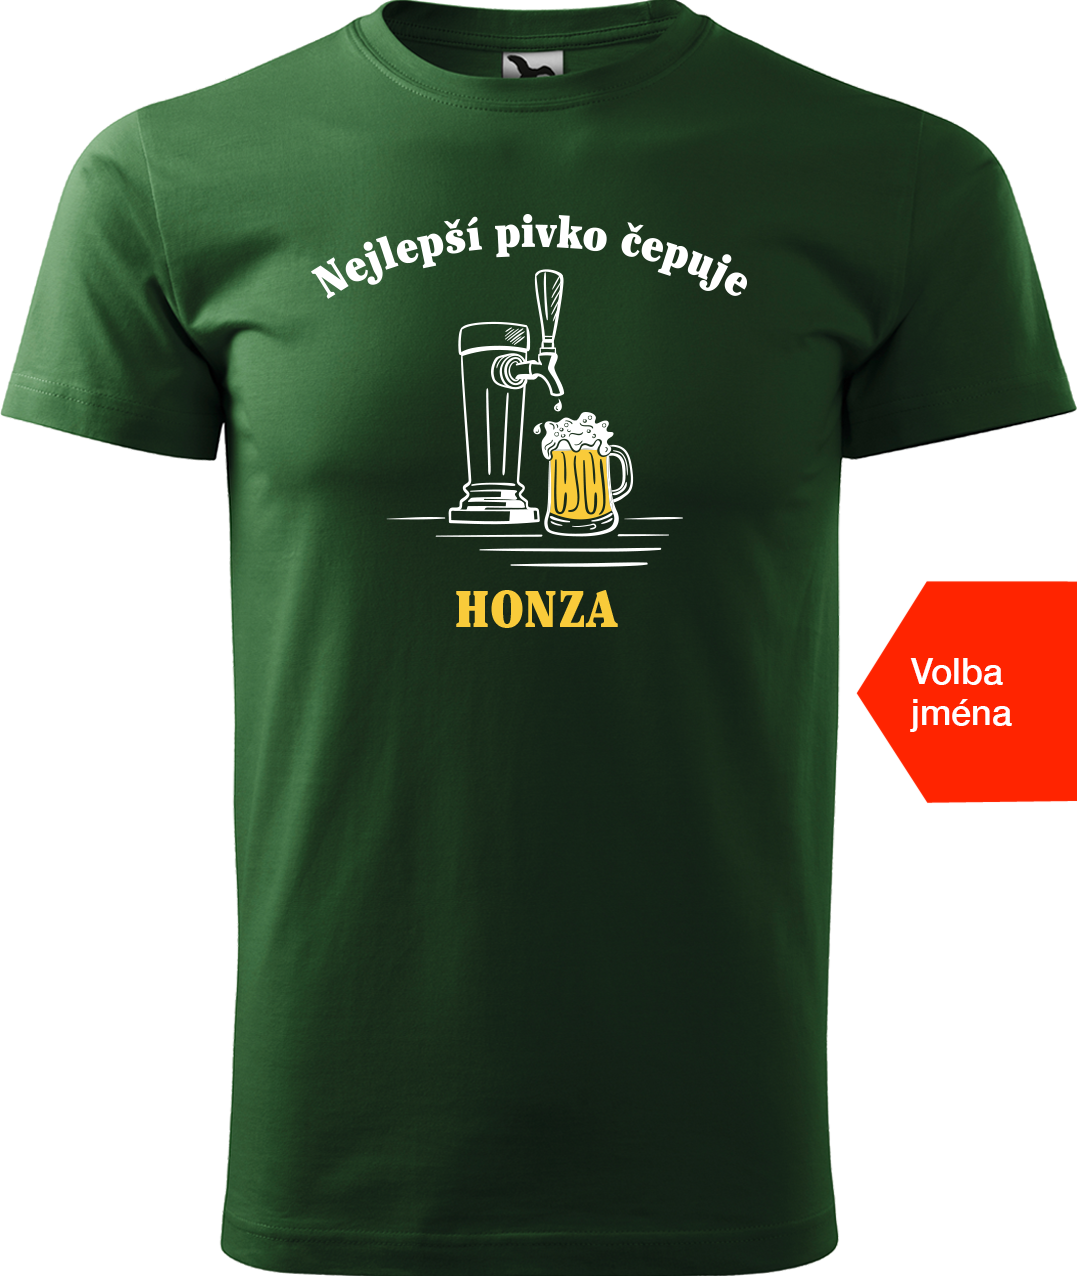 Pivní tričko - Nejlepší pivko čepuje + jméno Velikost: XL, Barva: Lahvově zelená (06)